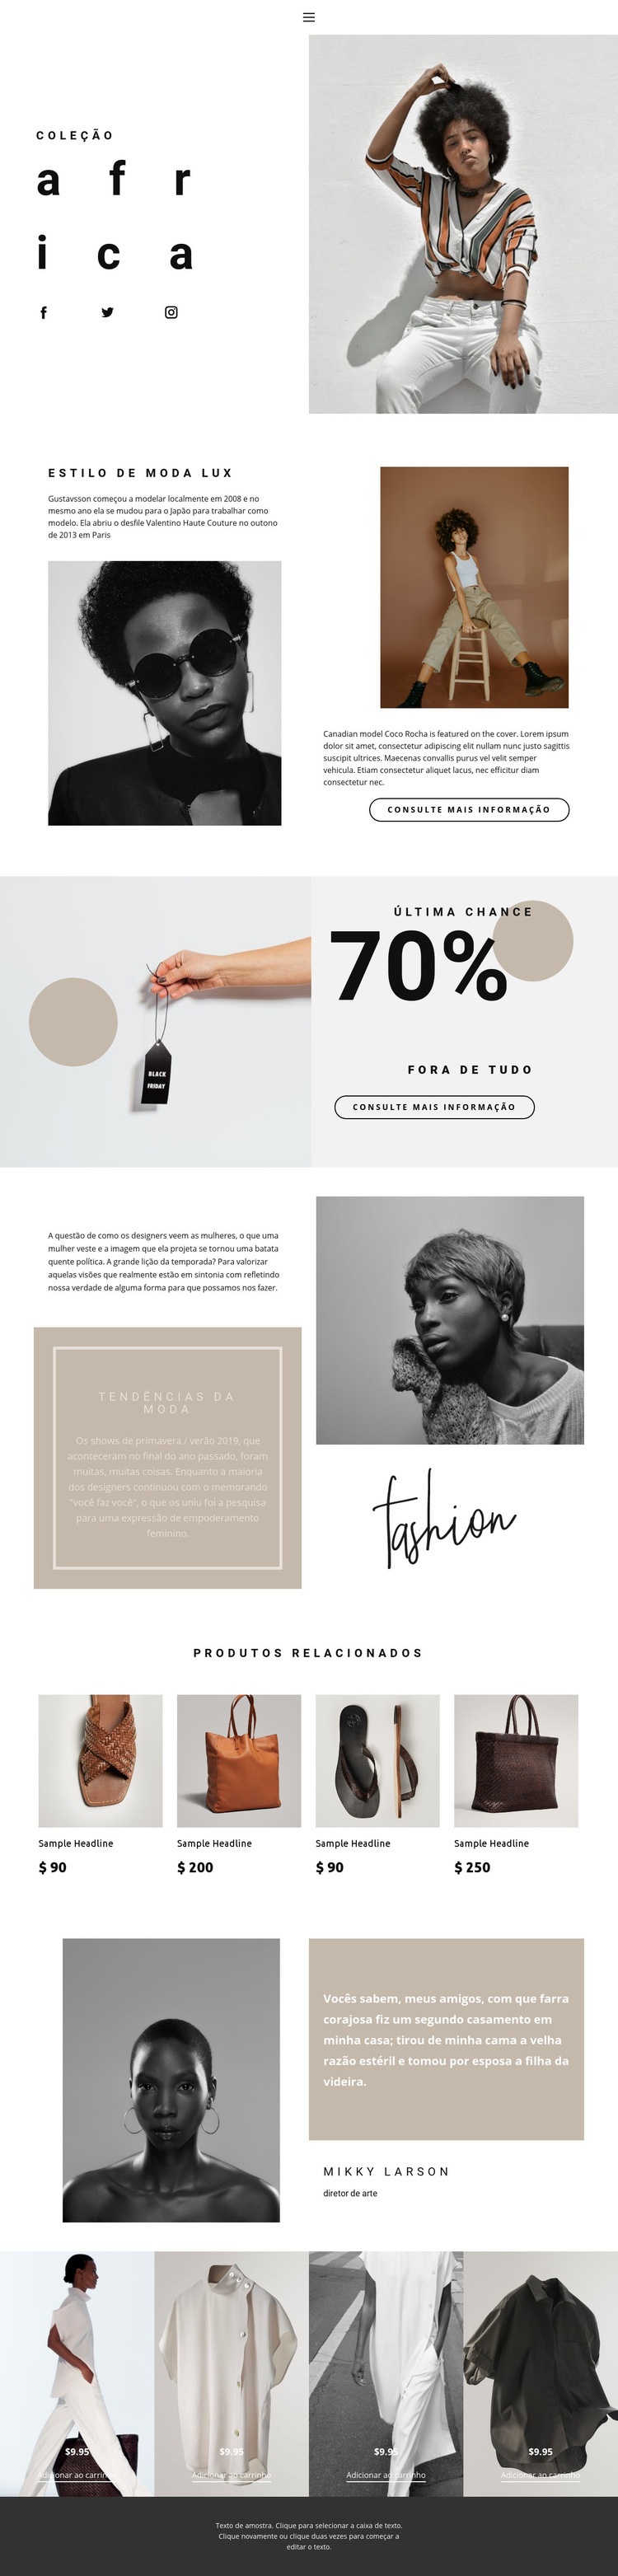 Ideias de moda e avanço Design do site